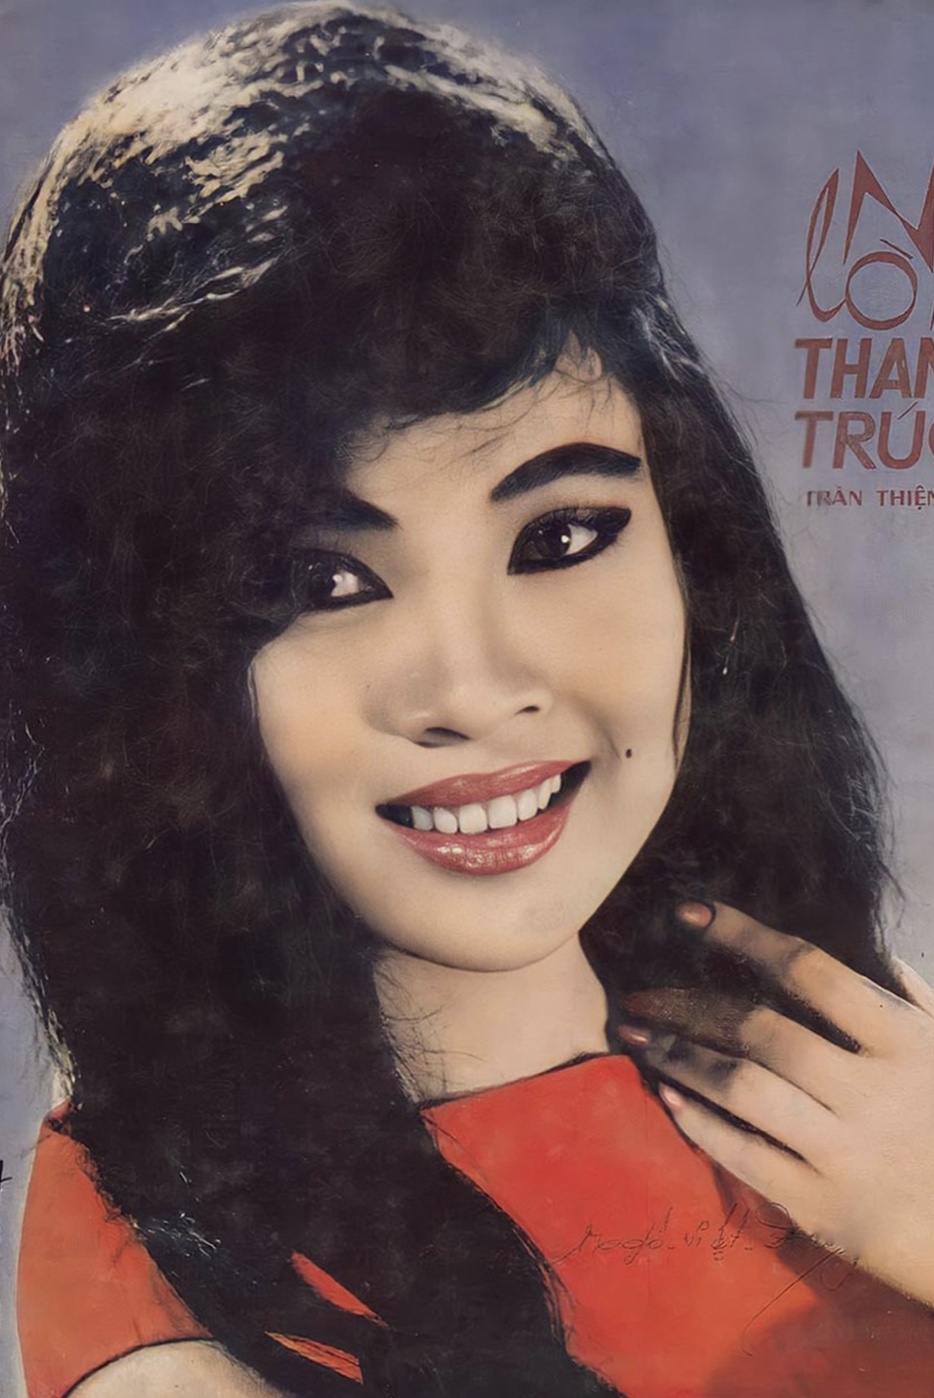 Nữ danh ca có nhan sắc trời ban, từng được mệnh danh là "hoa hậu nghệ sĩ" thập niên 60- Ảnh 1.